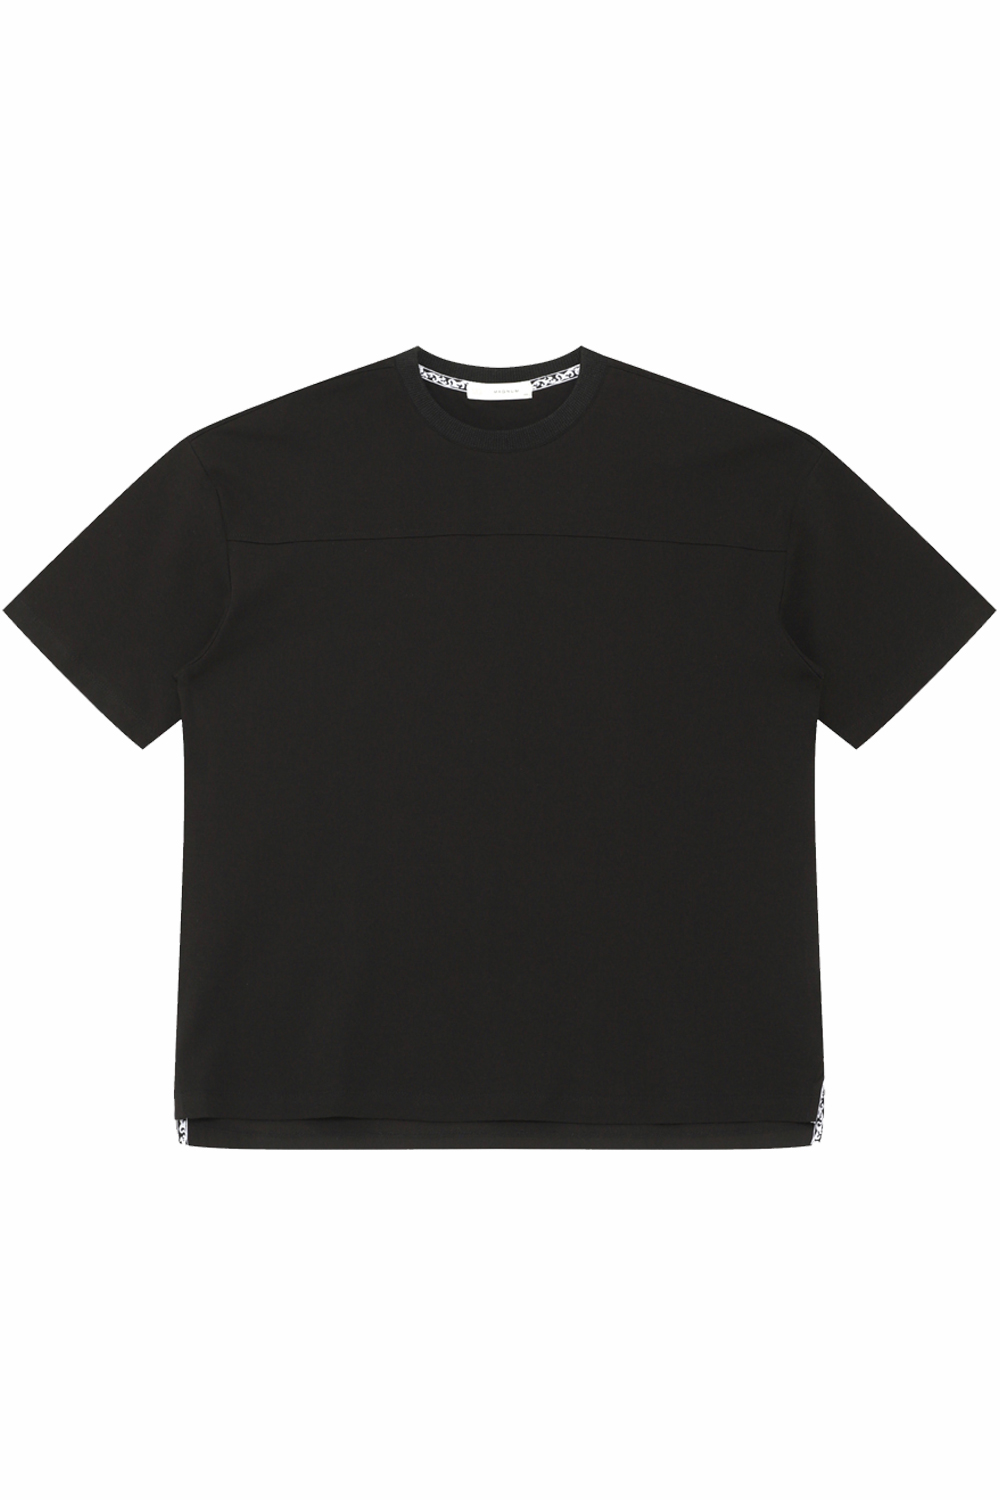 [공식스토어] 절개 마킹 로고 티셔츠 BN3MTS770BK